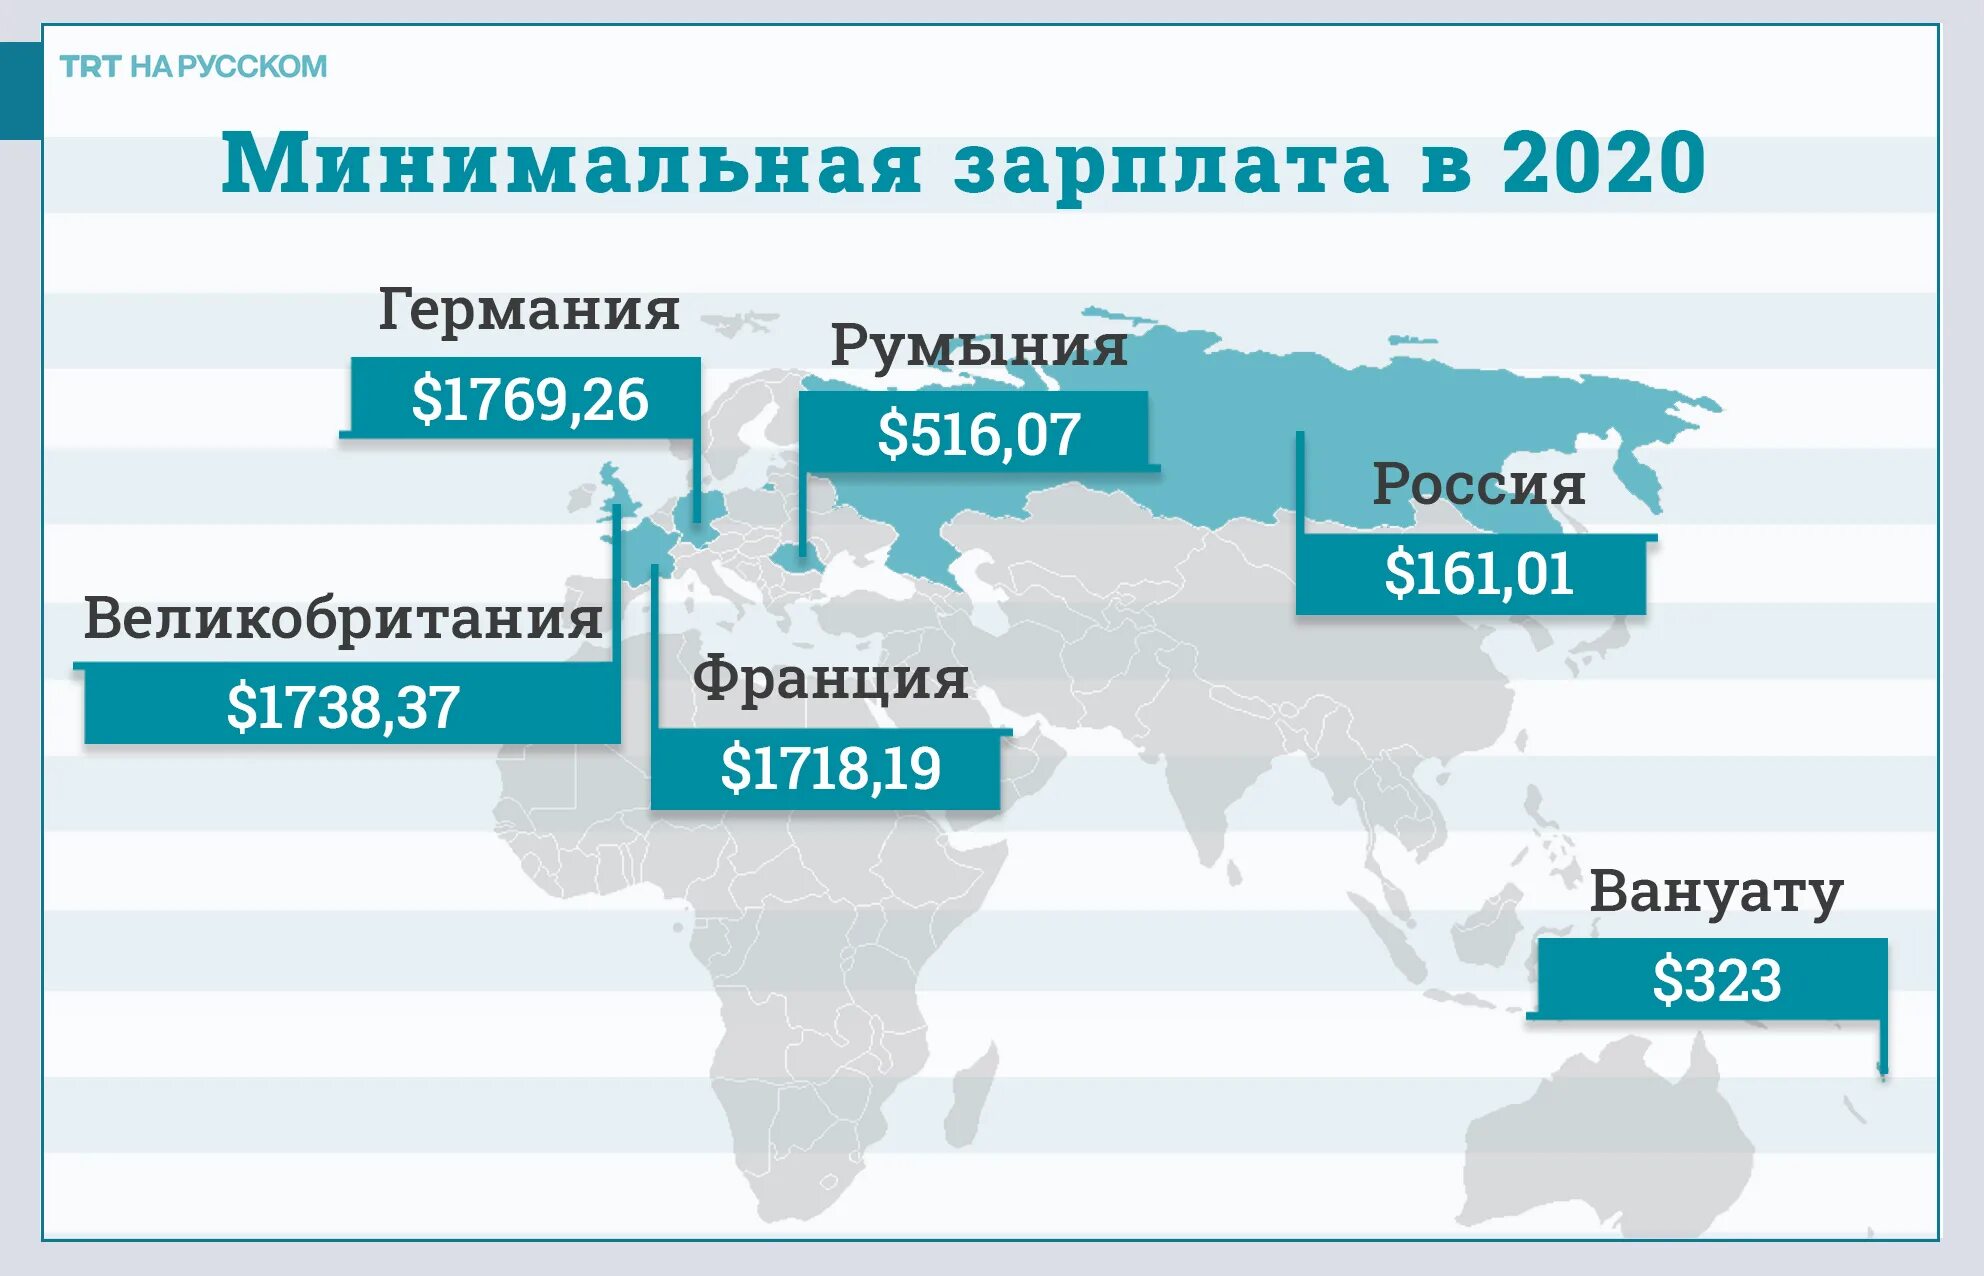 2020 год 4 июля. Средняя зарплата в РФ 2021. Средняя зарплата в России в 2021 году. Среднемесячная заработная плата в РФ В 2021 году. Минимальная заработная плата в 2021 году в России.